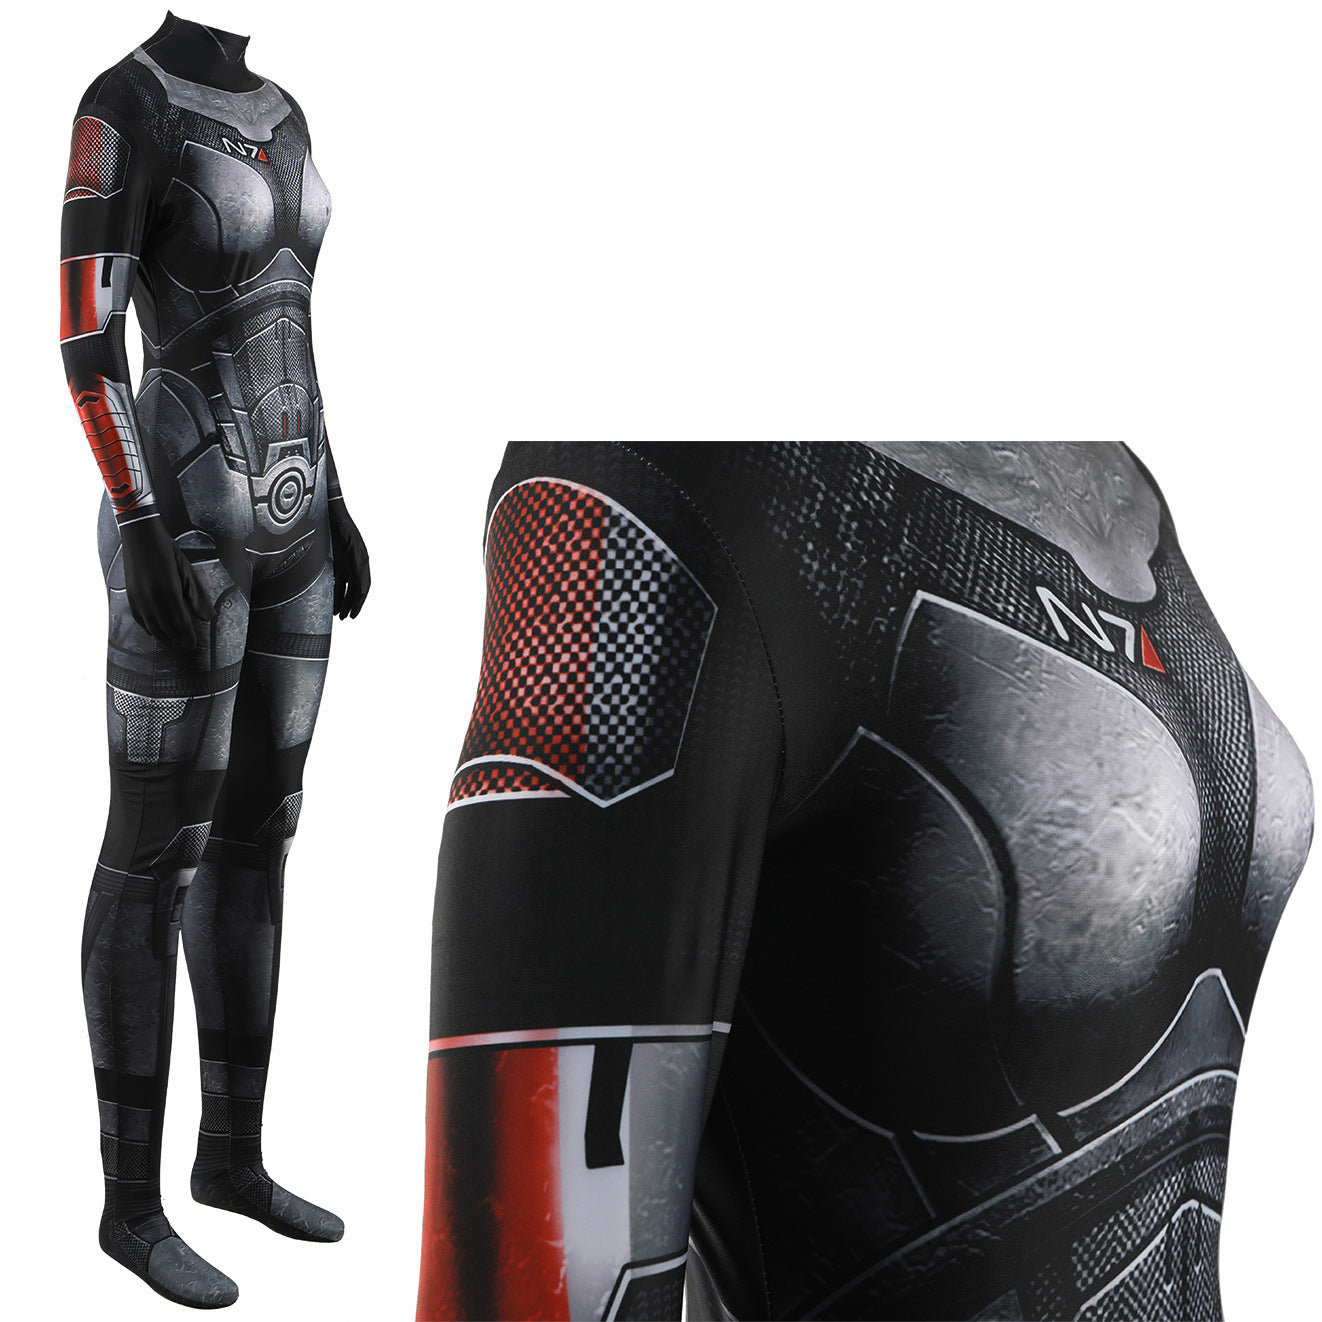 femshep shepard n7 armor jumpsuits cosplay costume kids adult halloween bodysuit